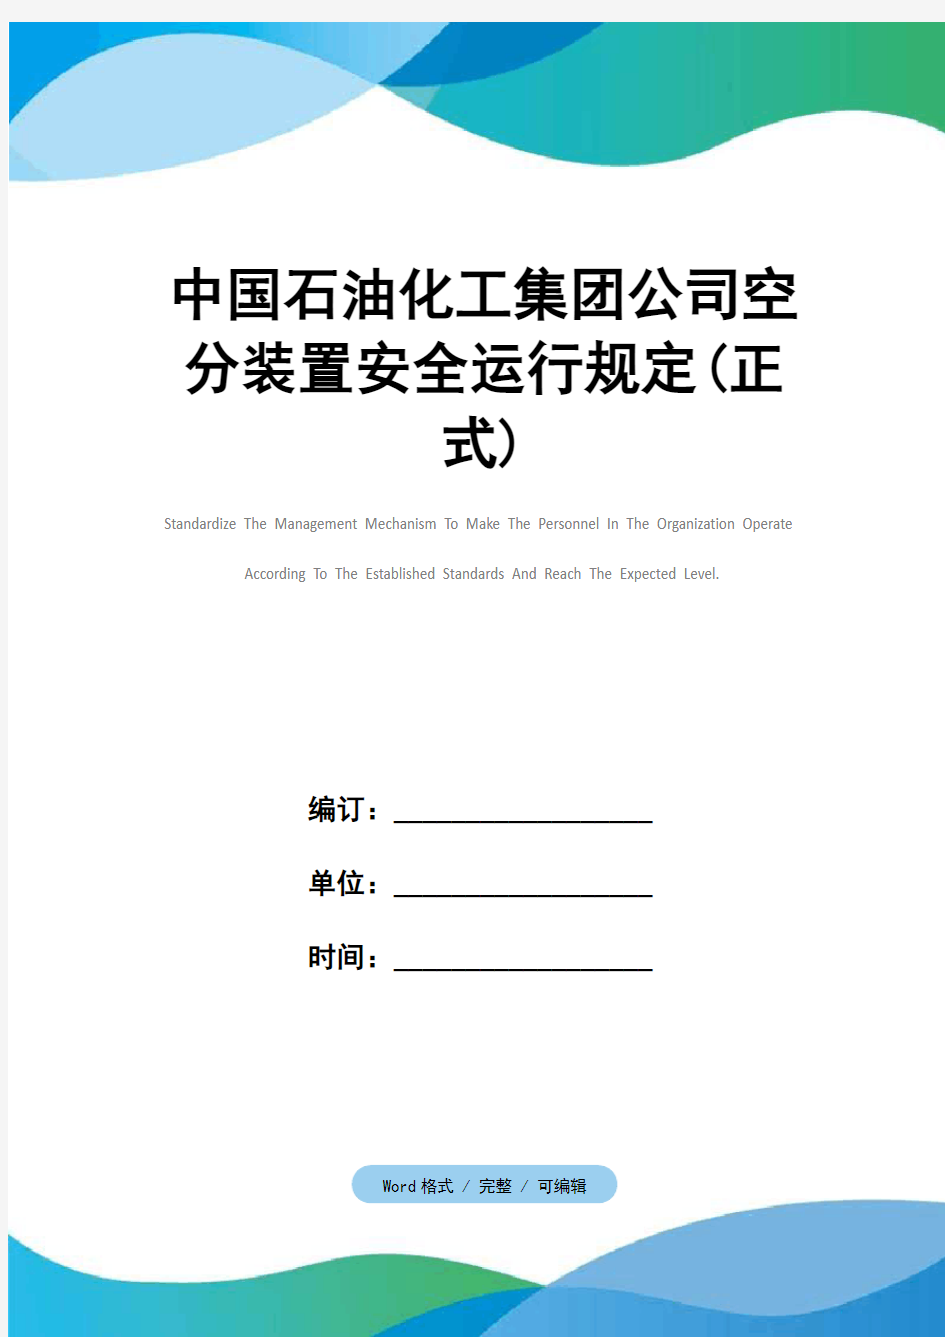 中国石油化工集团公司空分装置安全运行规定(正式)